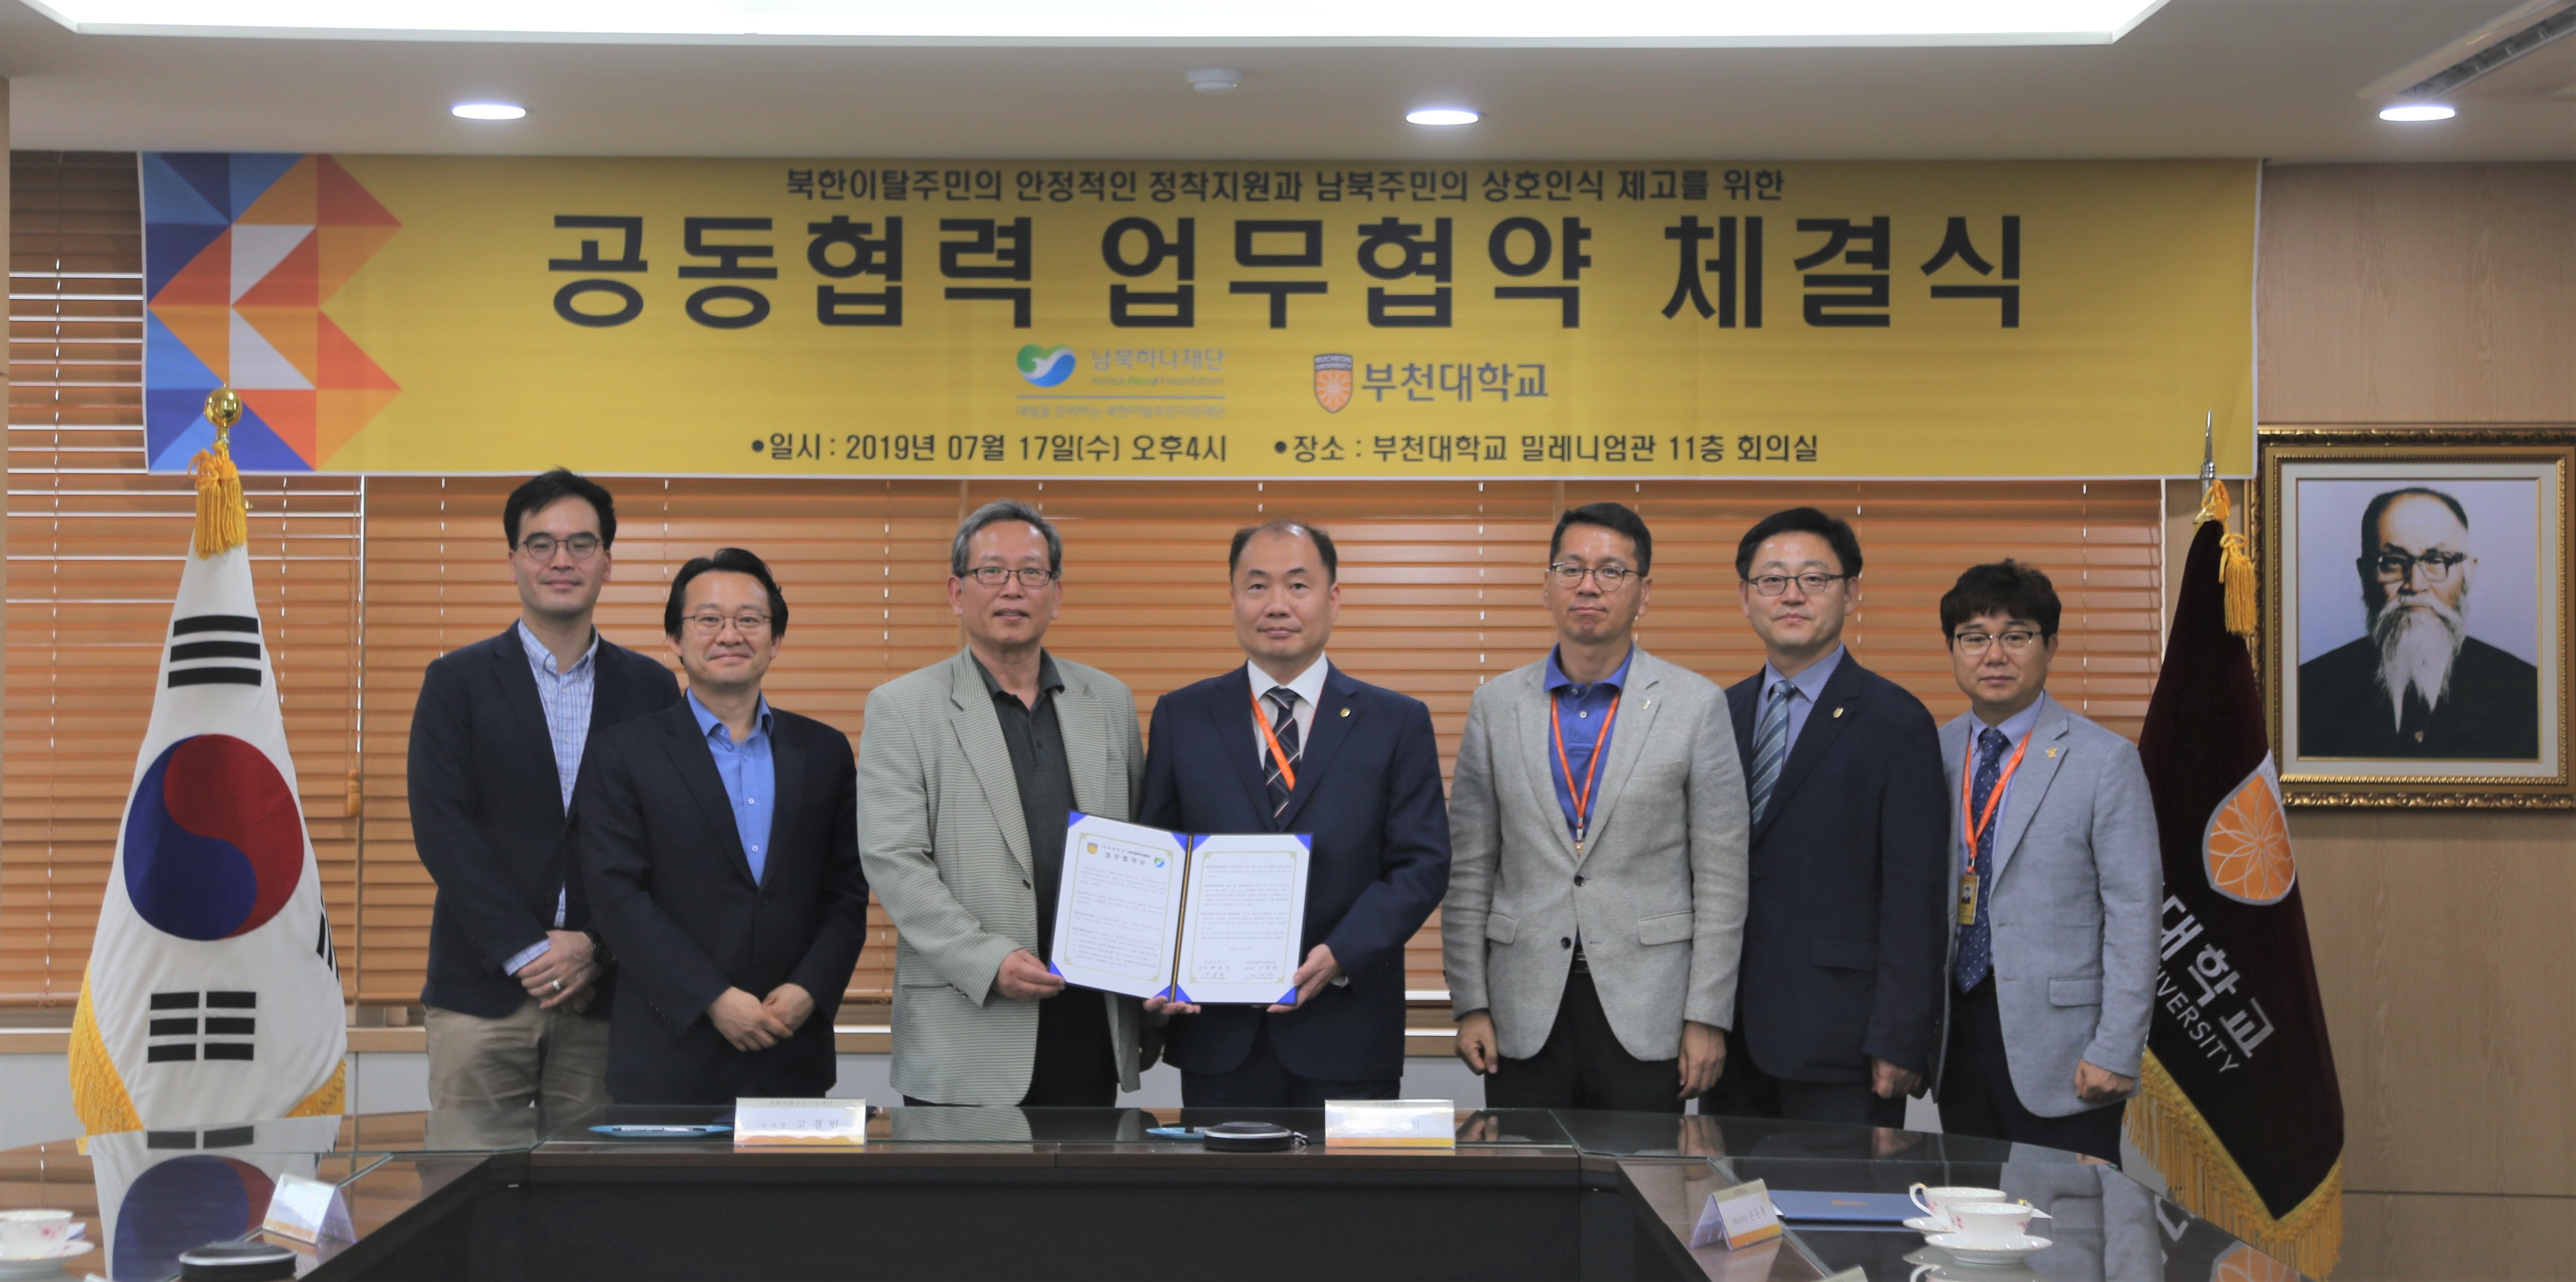 부천대학교, 북한이탈주민 일자리 창출 및 학업증진을 위한 업무협약 체결